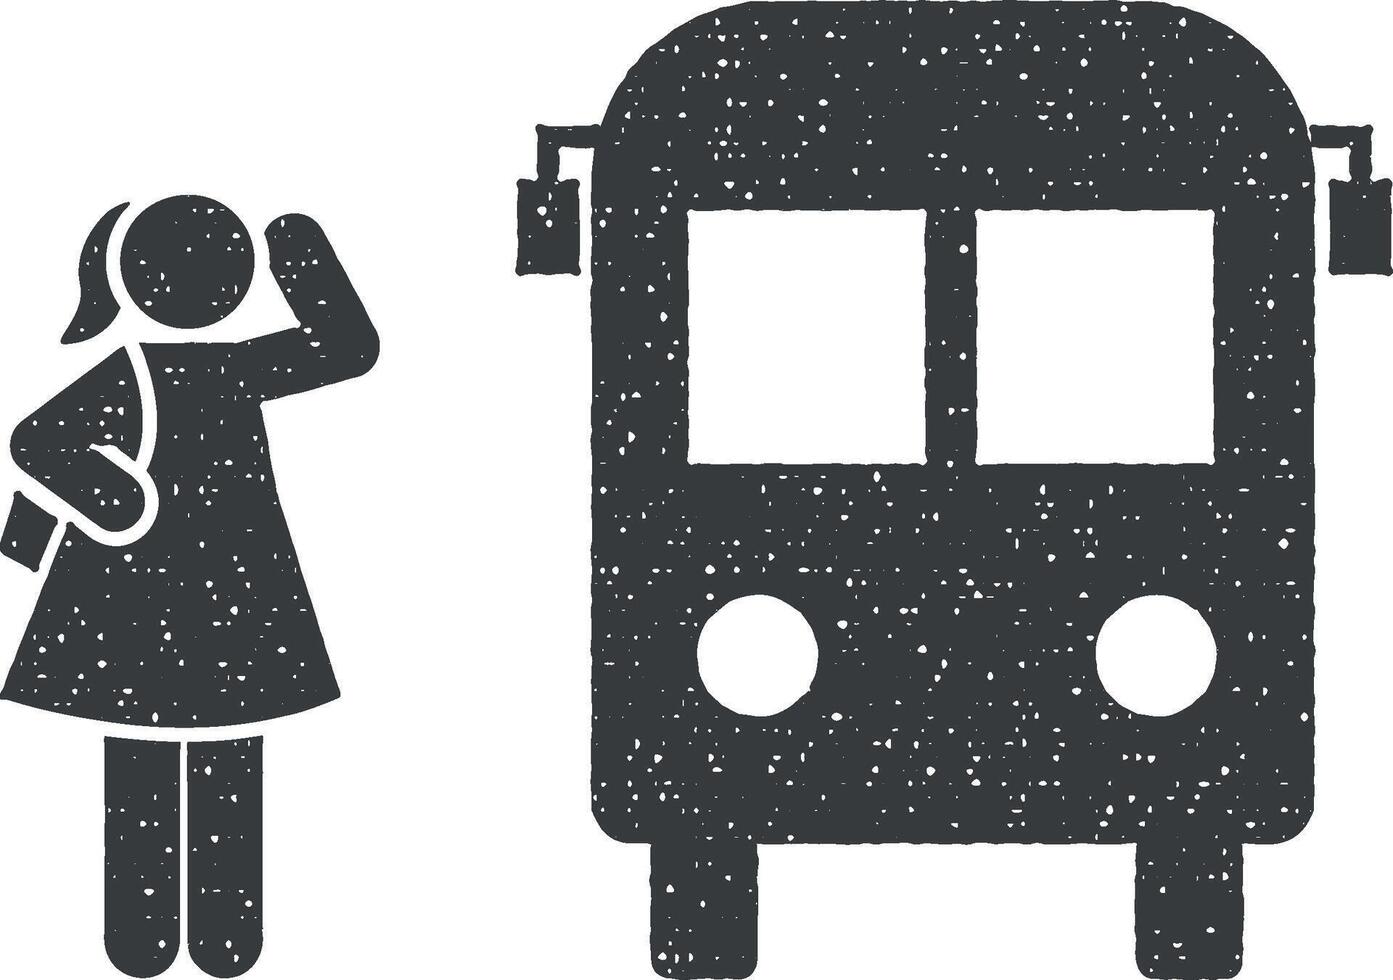 bus, étudiant, école icône vecteur illustration dans timbre style